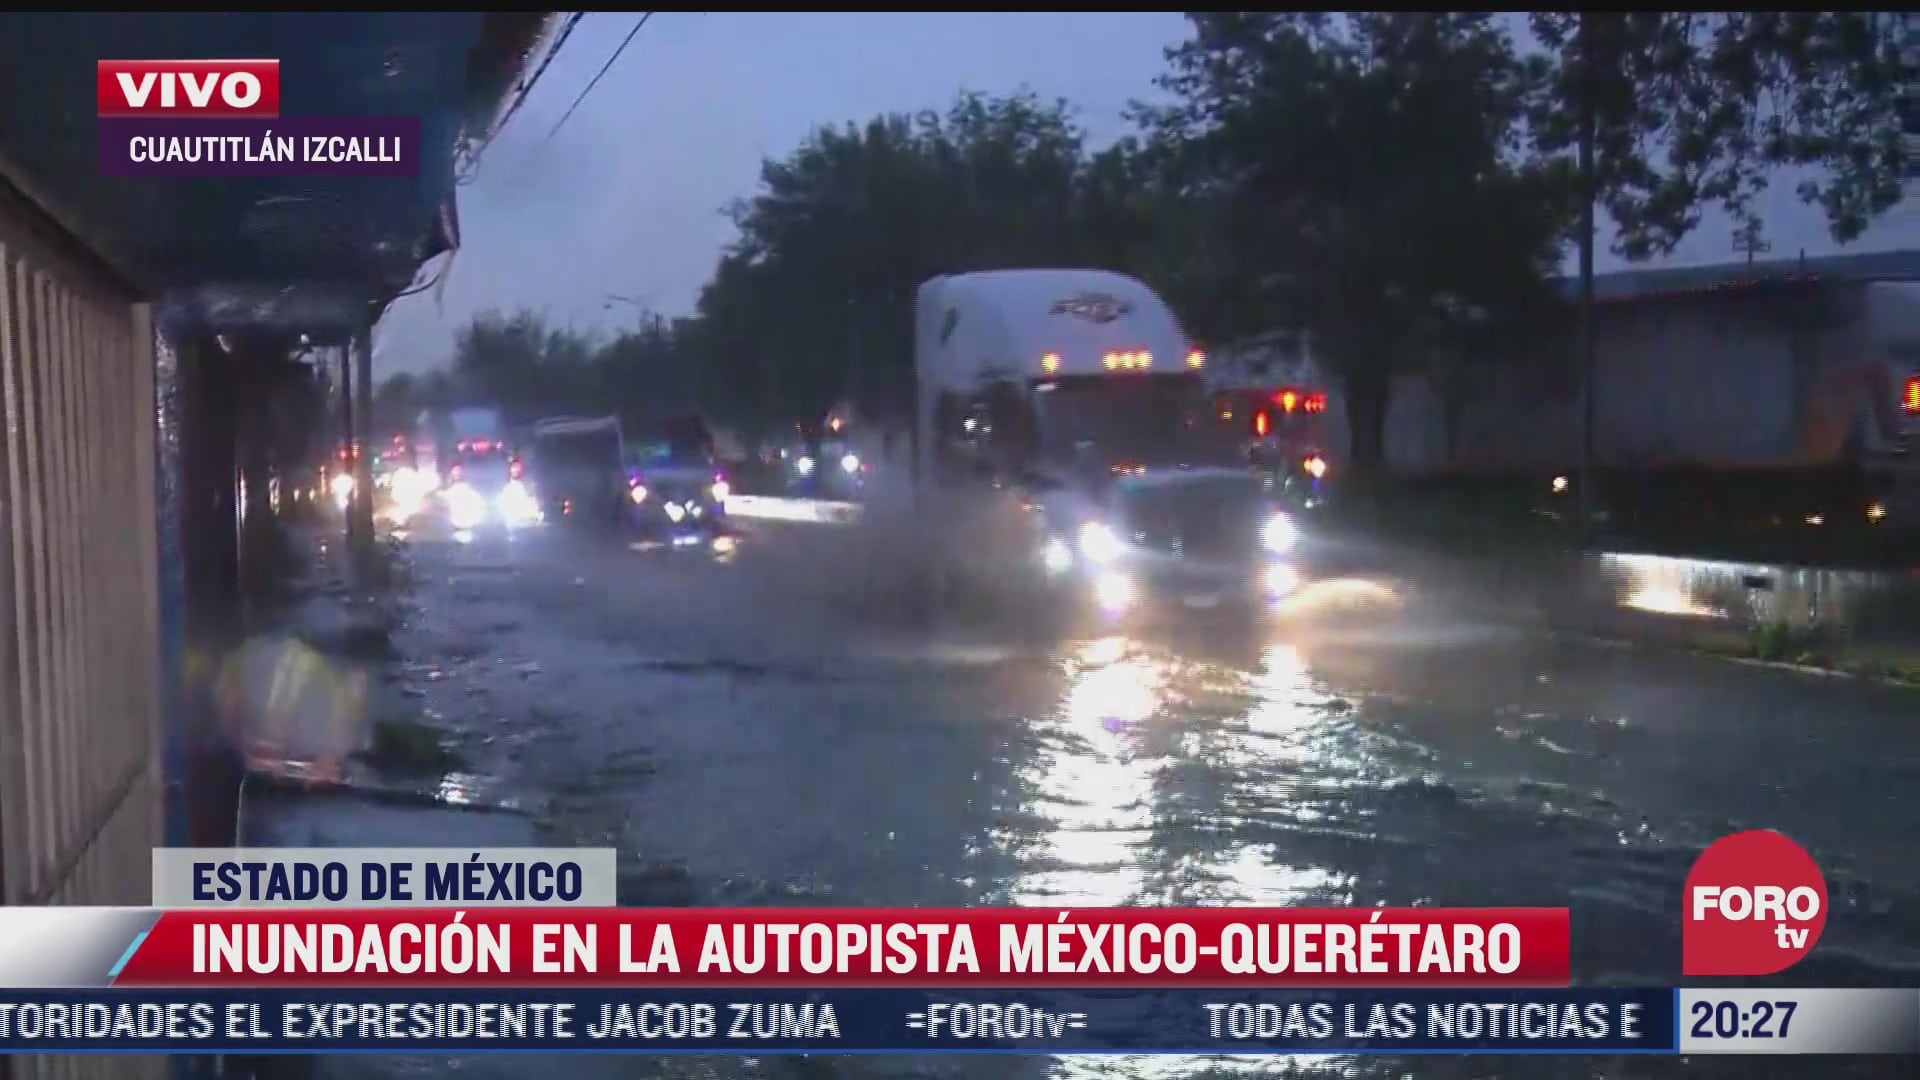 lluvias provocan inundacion en autopista mexico queretaro